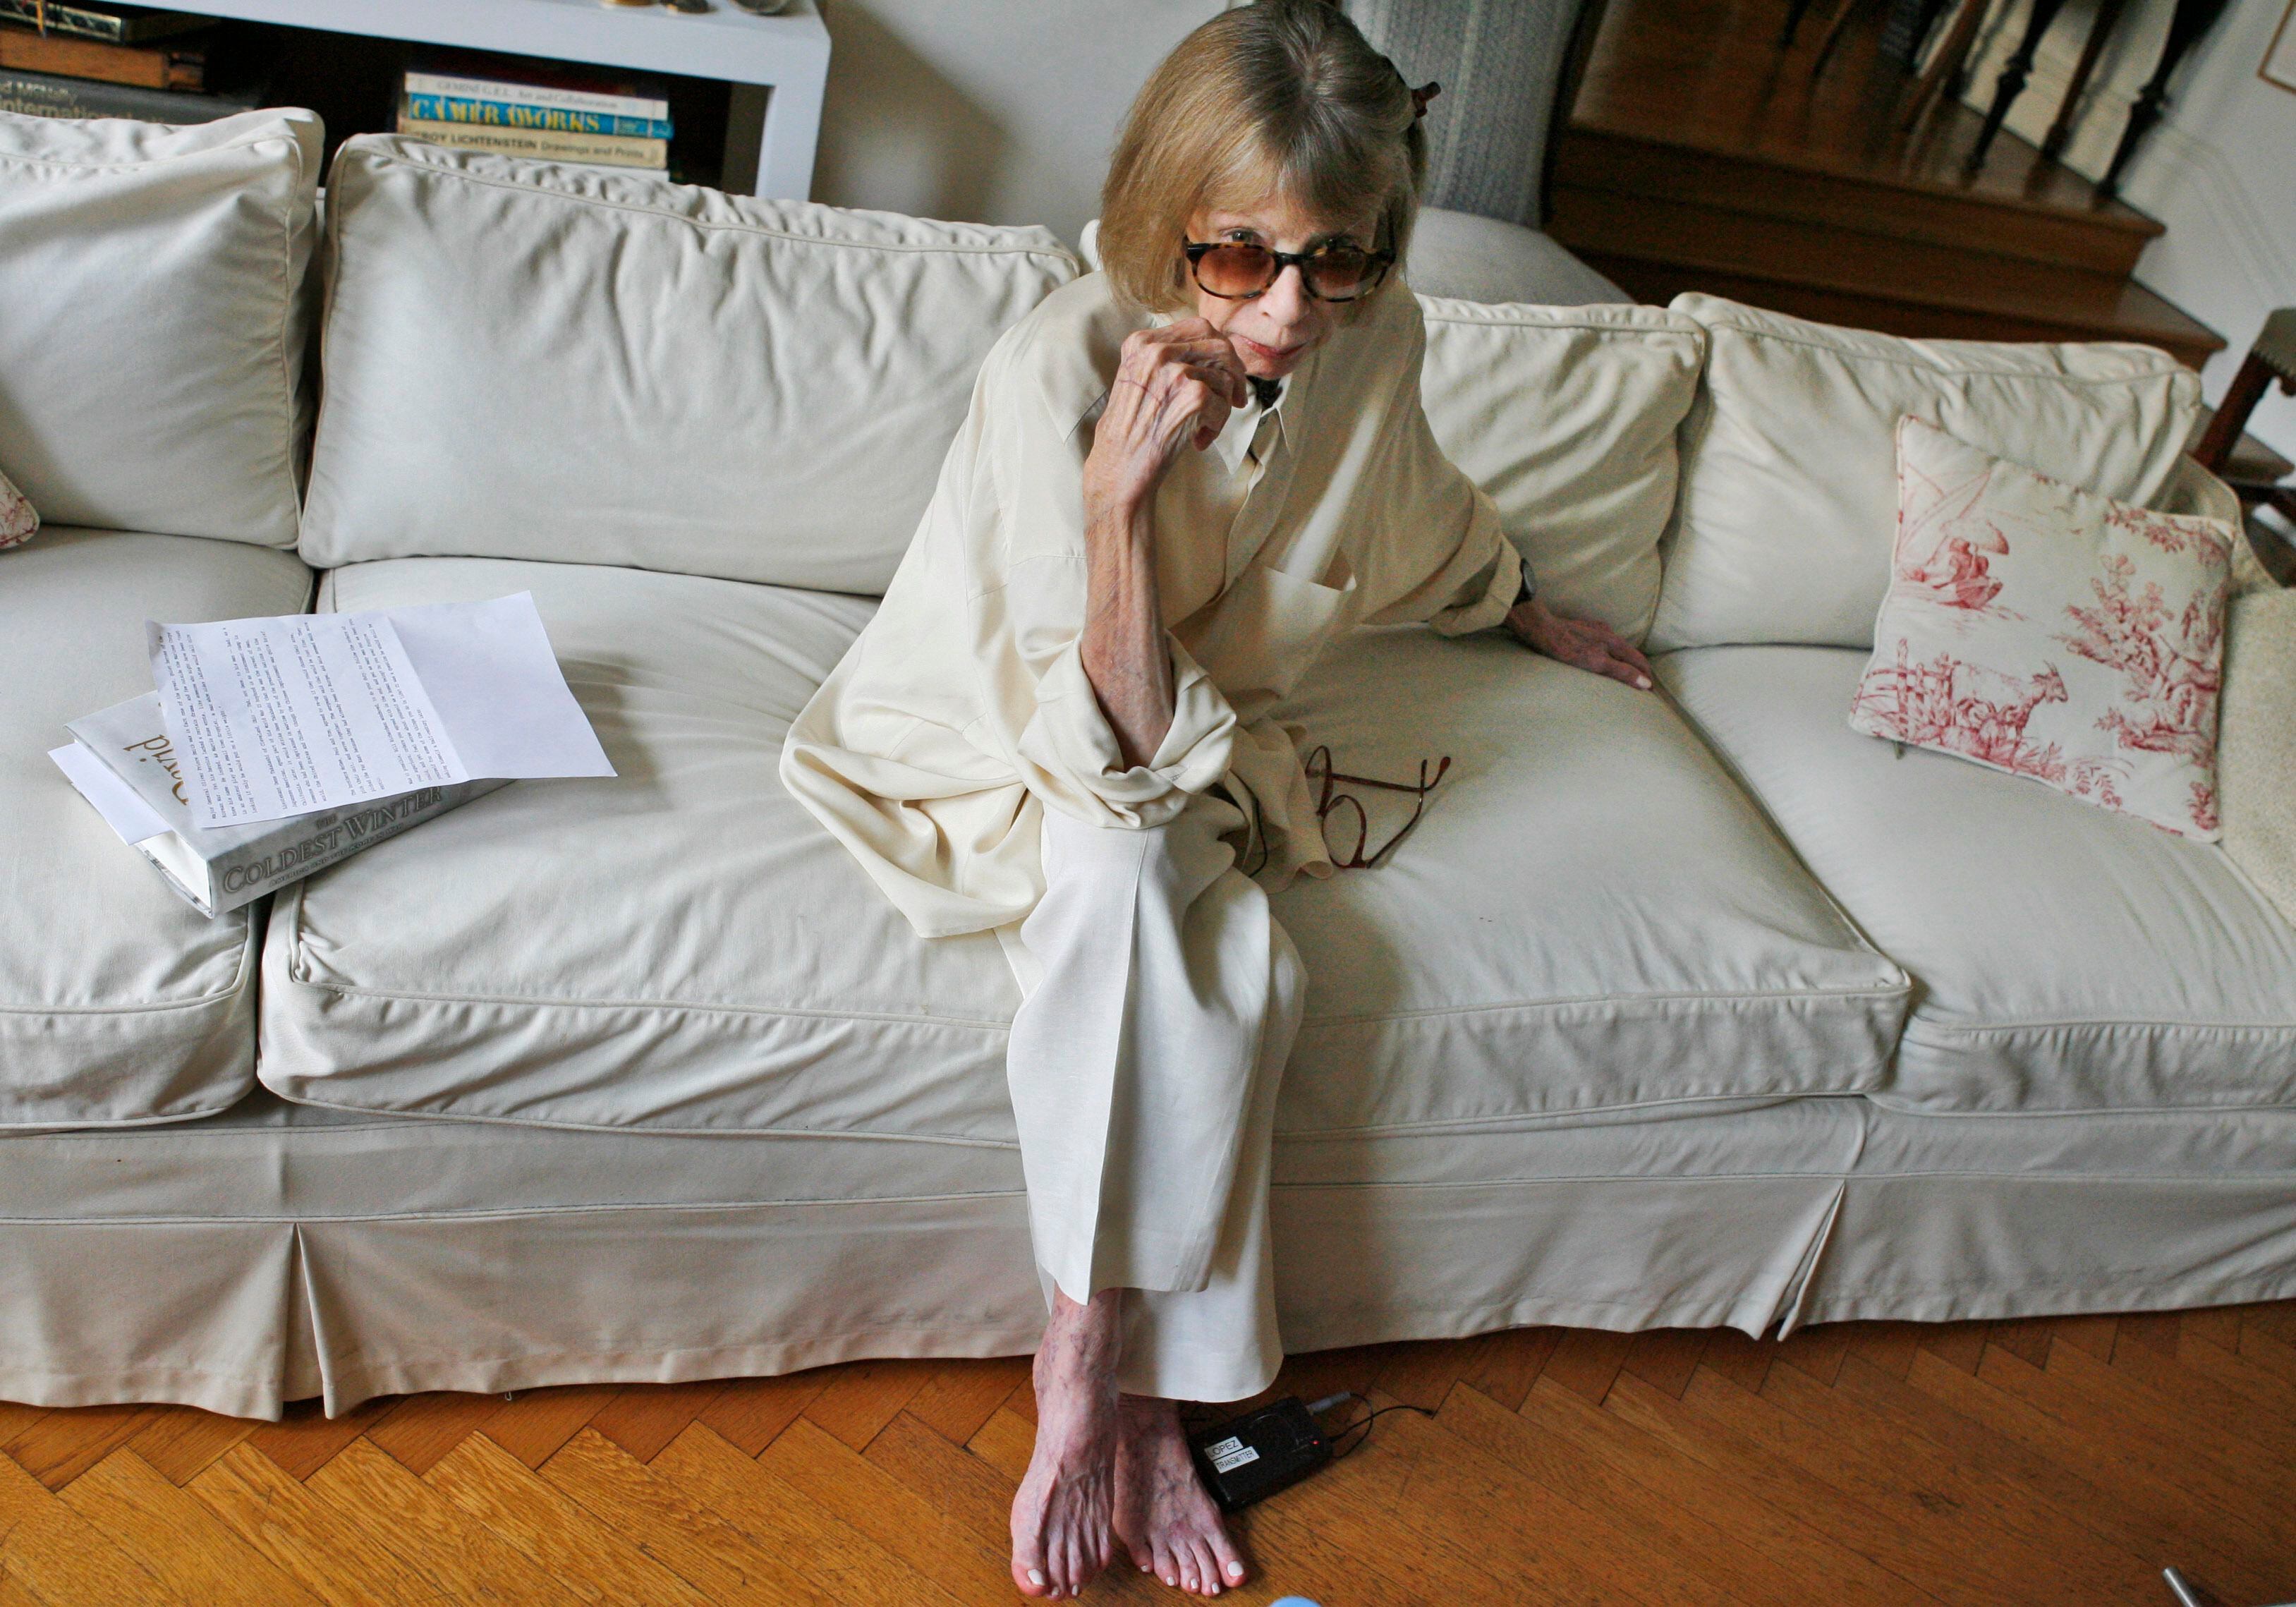 Joan Didion, peerless prose stylist, dies at 87